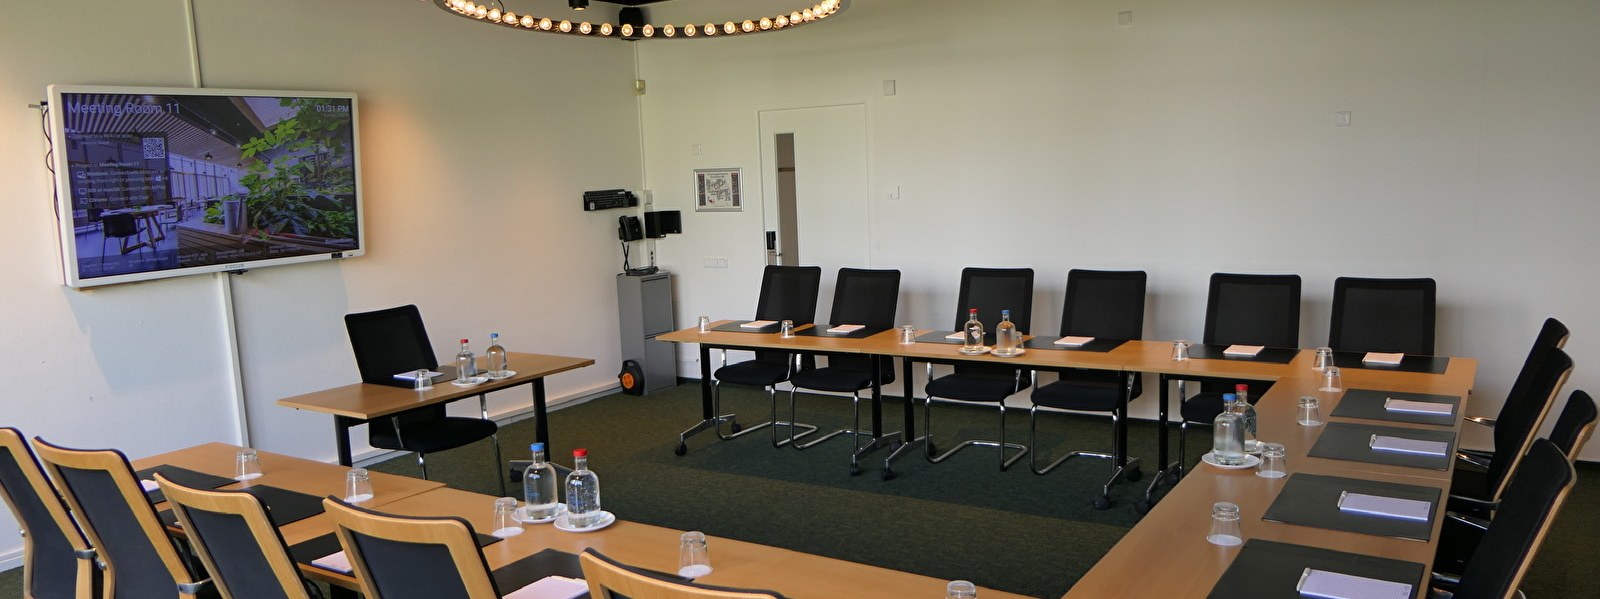 Geräumige Tagungsräume mit technischen Einrichtungen Notiz Hotel Leeuwarden